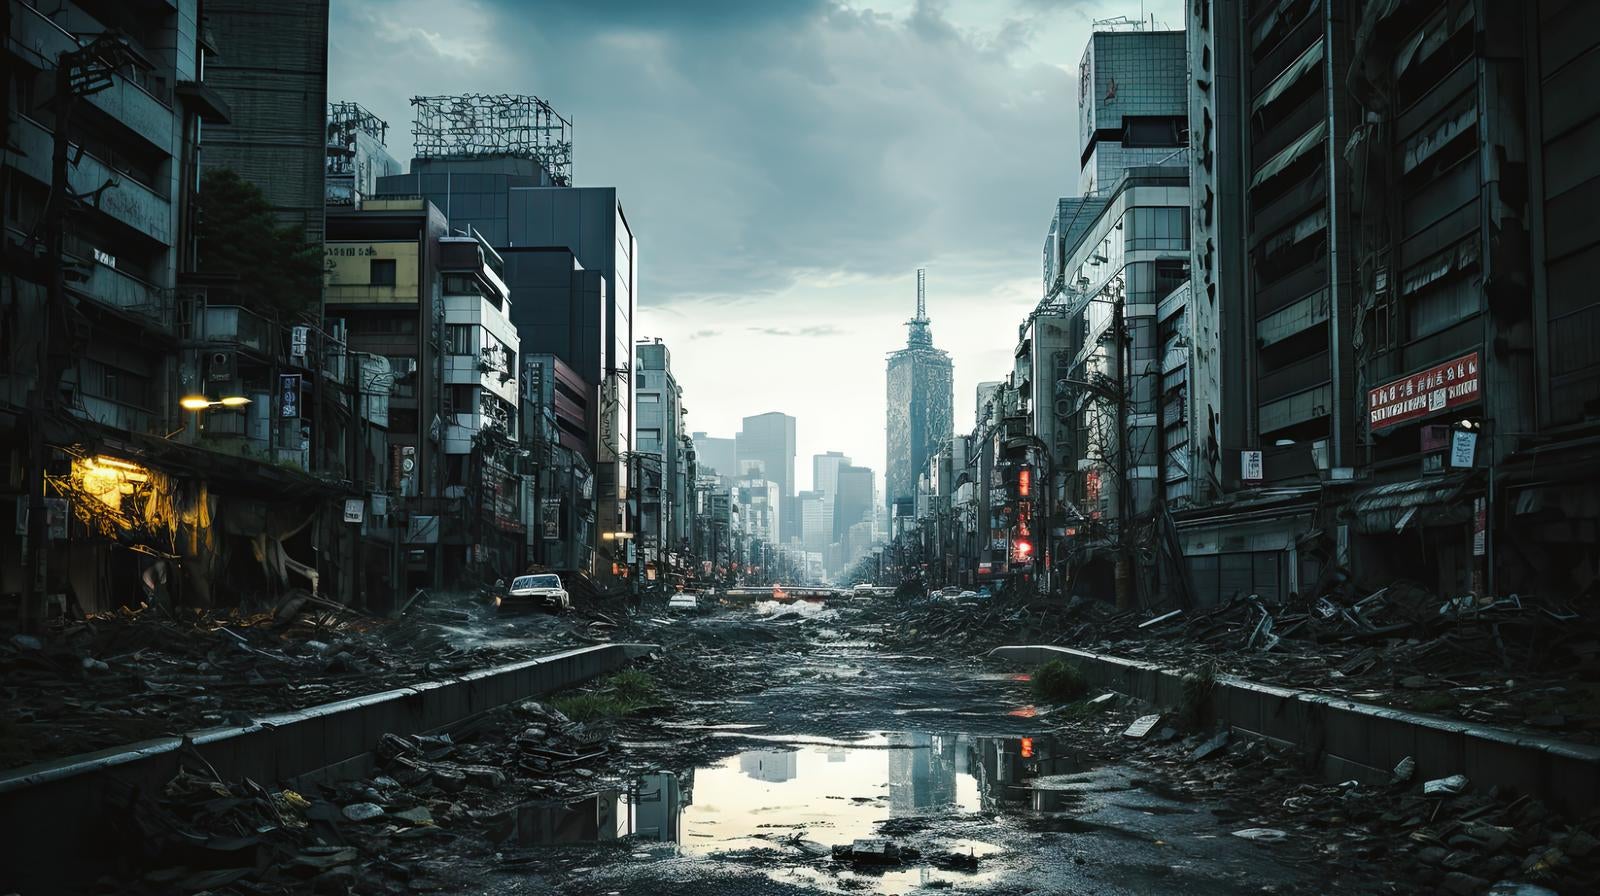 「崩壊した都市部」の写真